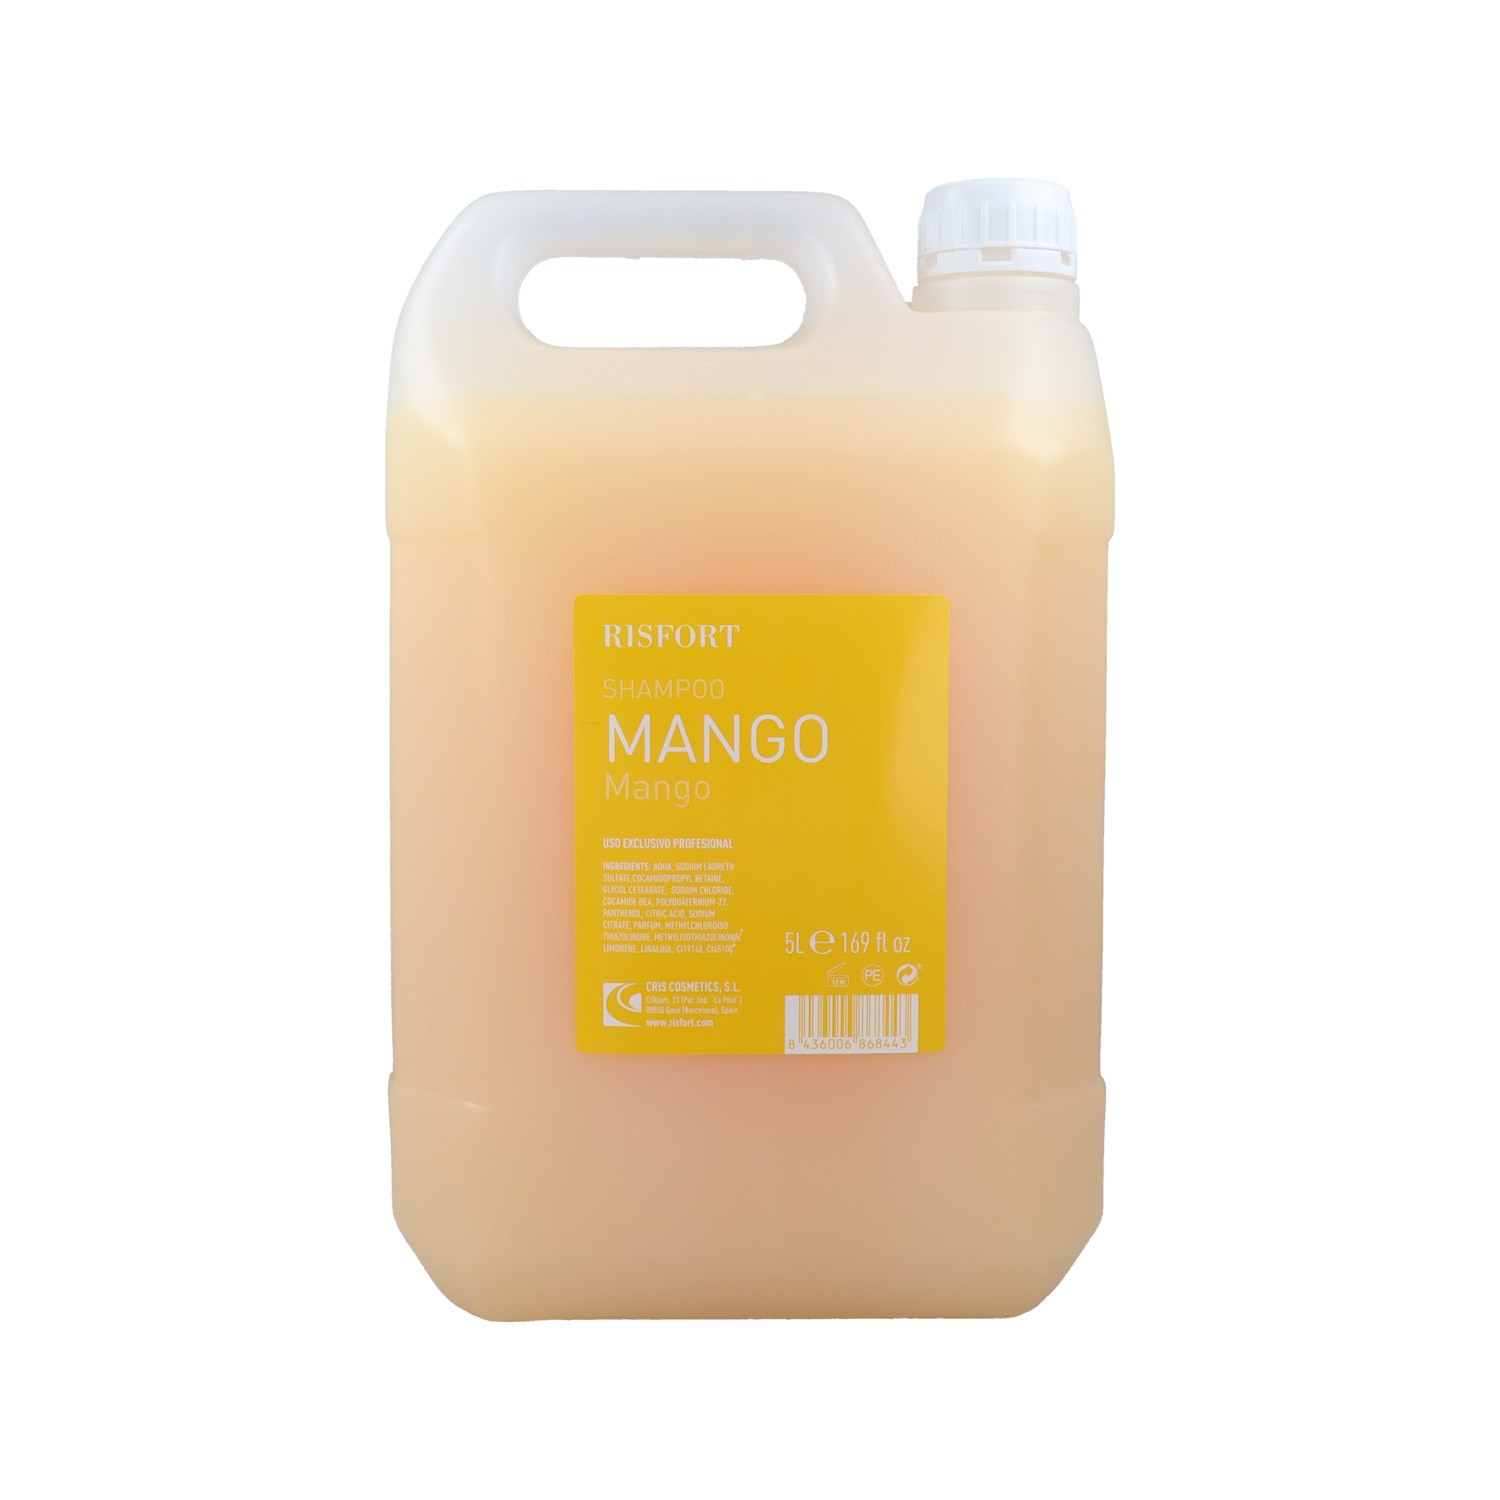 Risfort Mango Shampoo 5 l